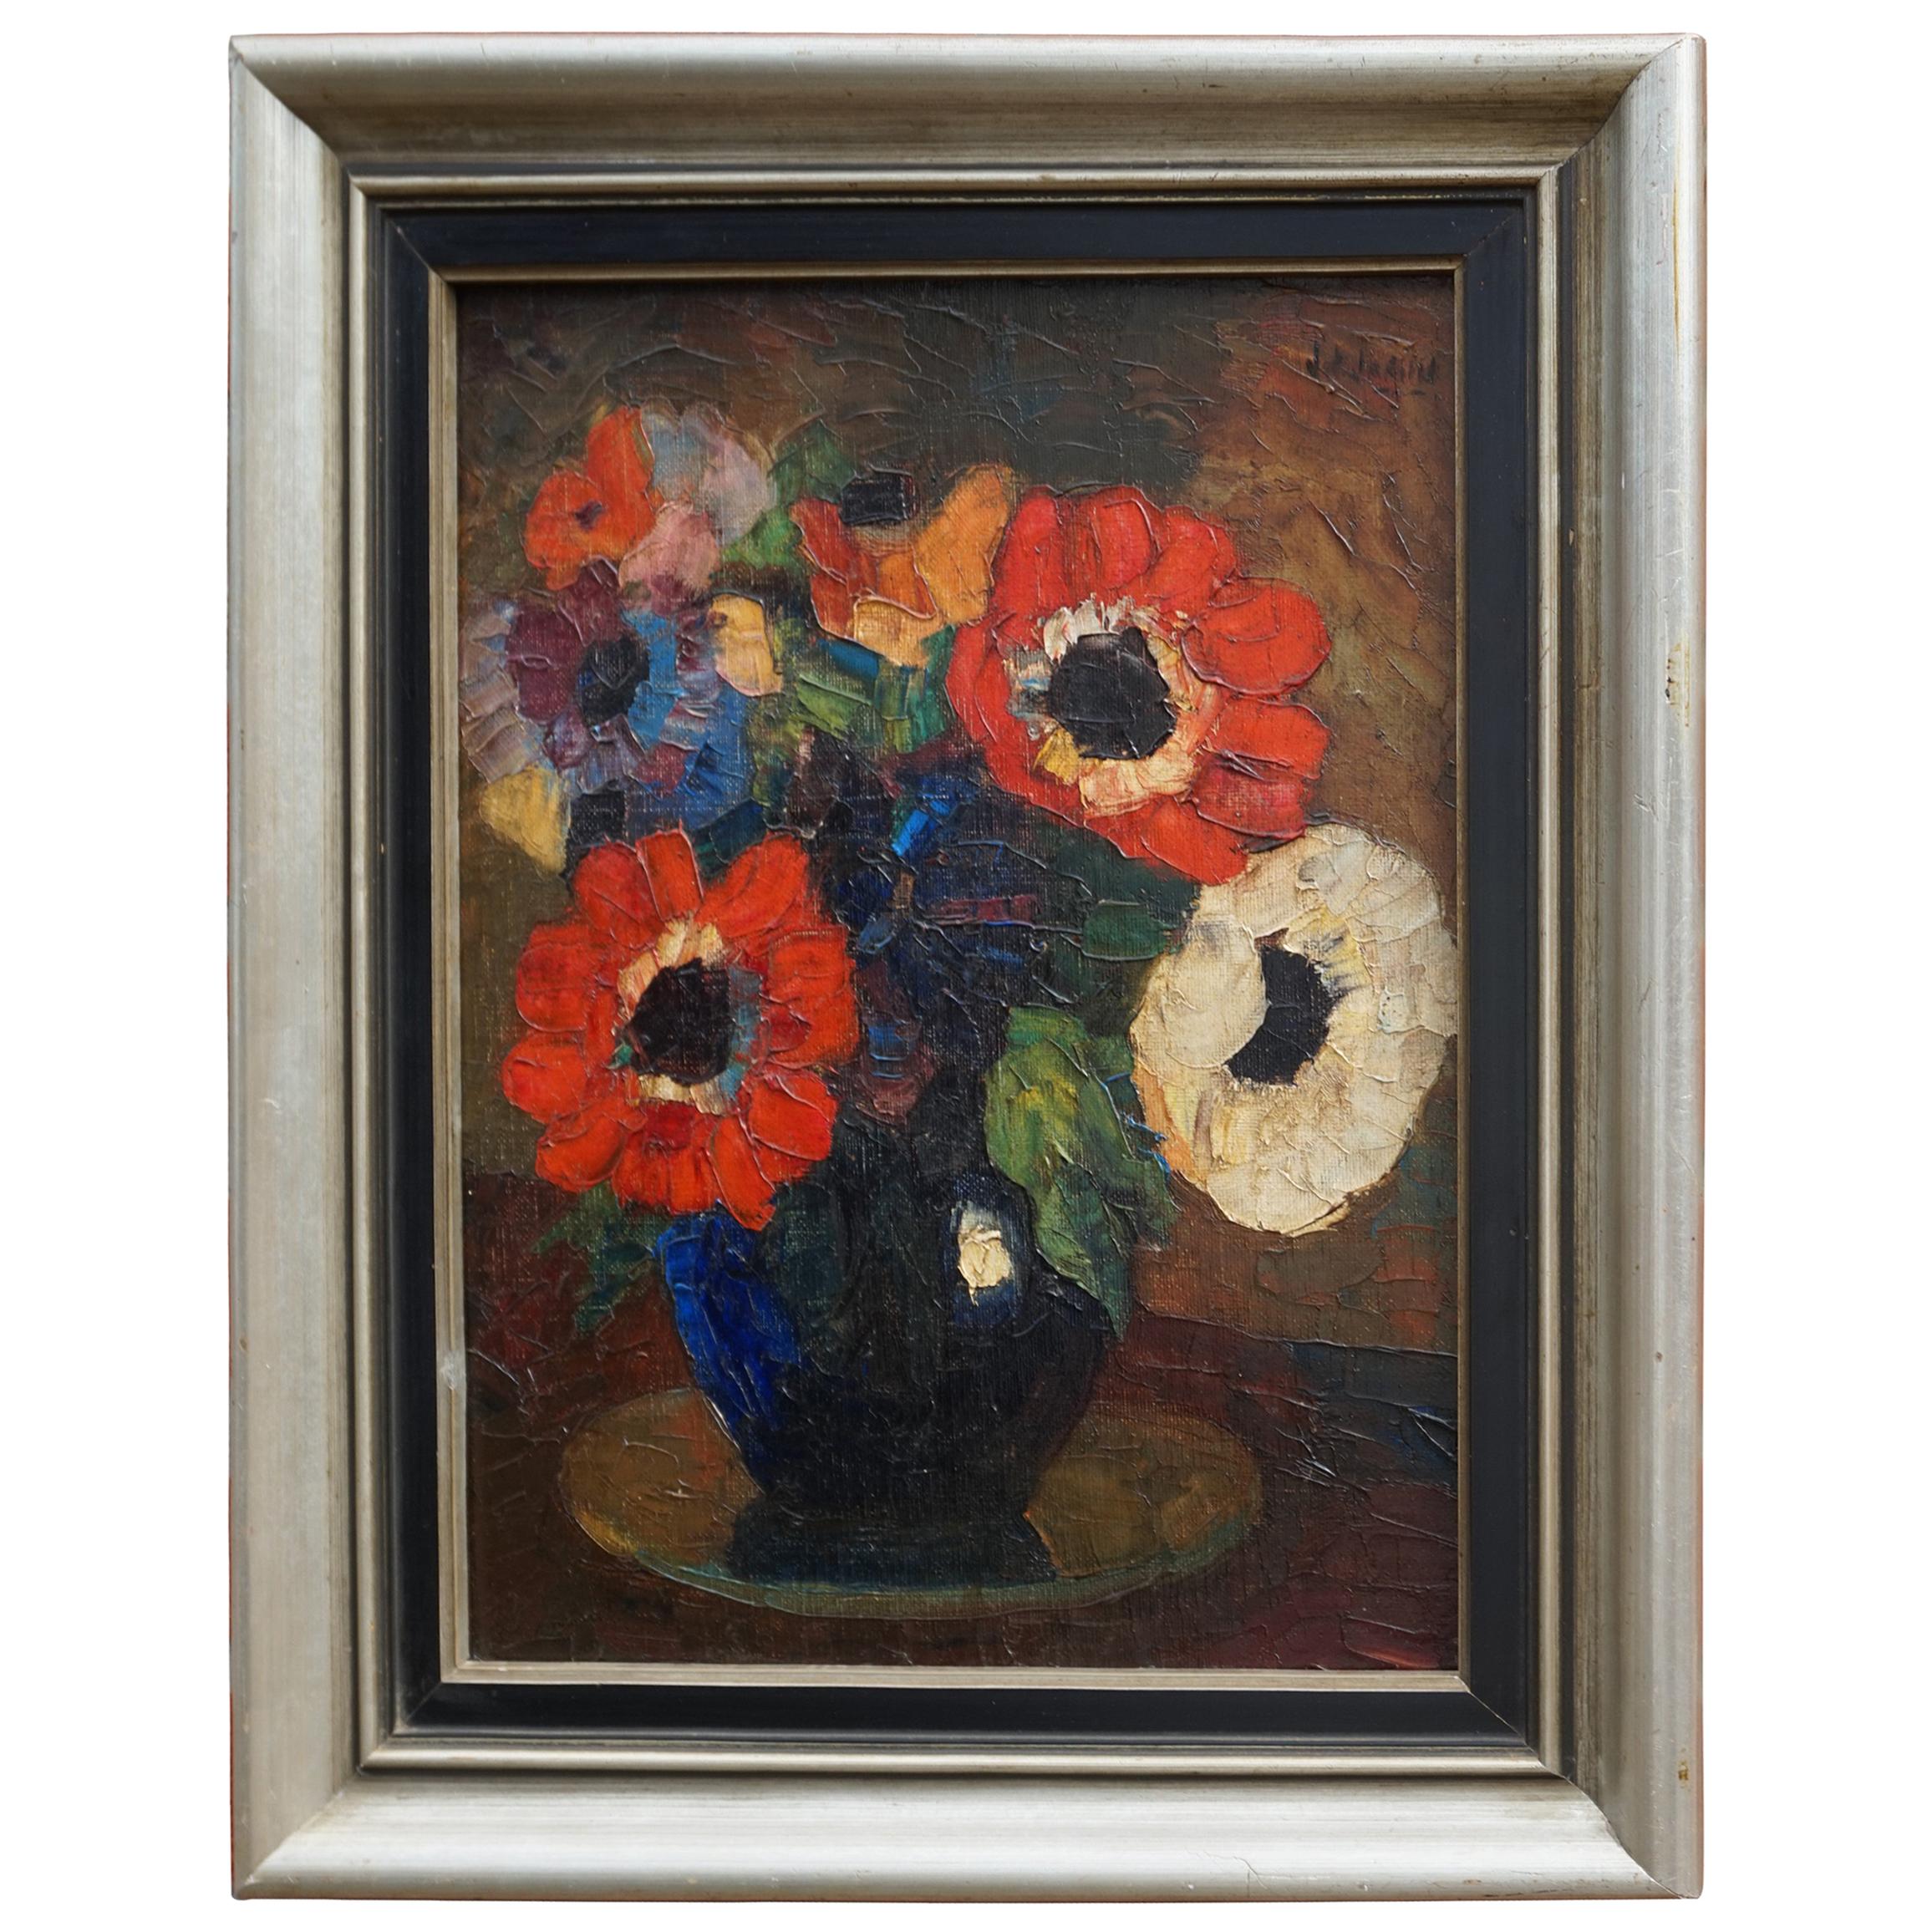 Bunter und lebendiger Blumenstrauß in Vase, Gemälde, Anfang bis Mitte des 20. Jahrhunderts